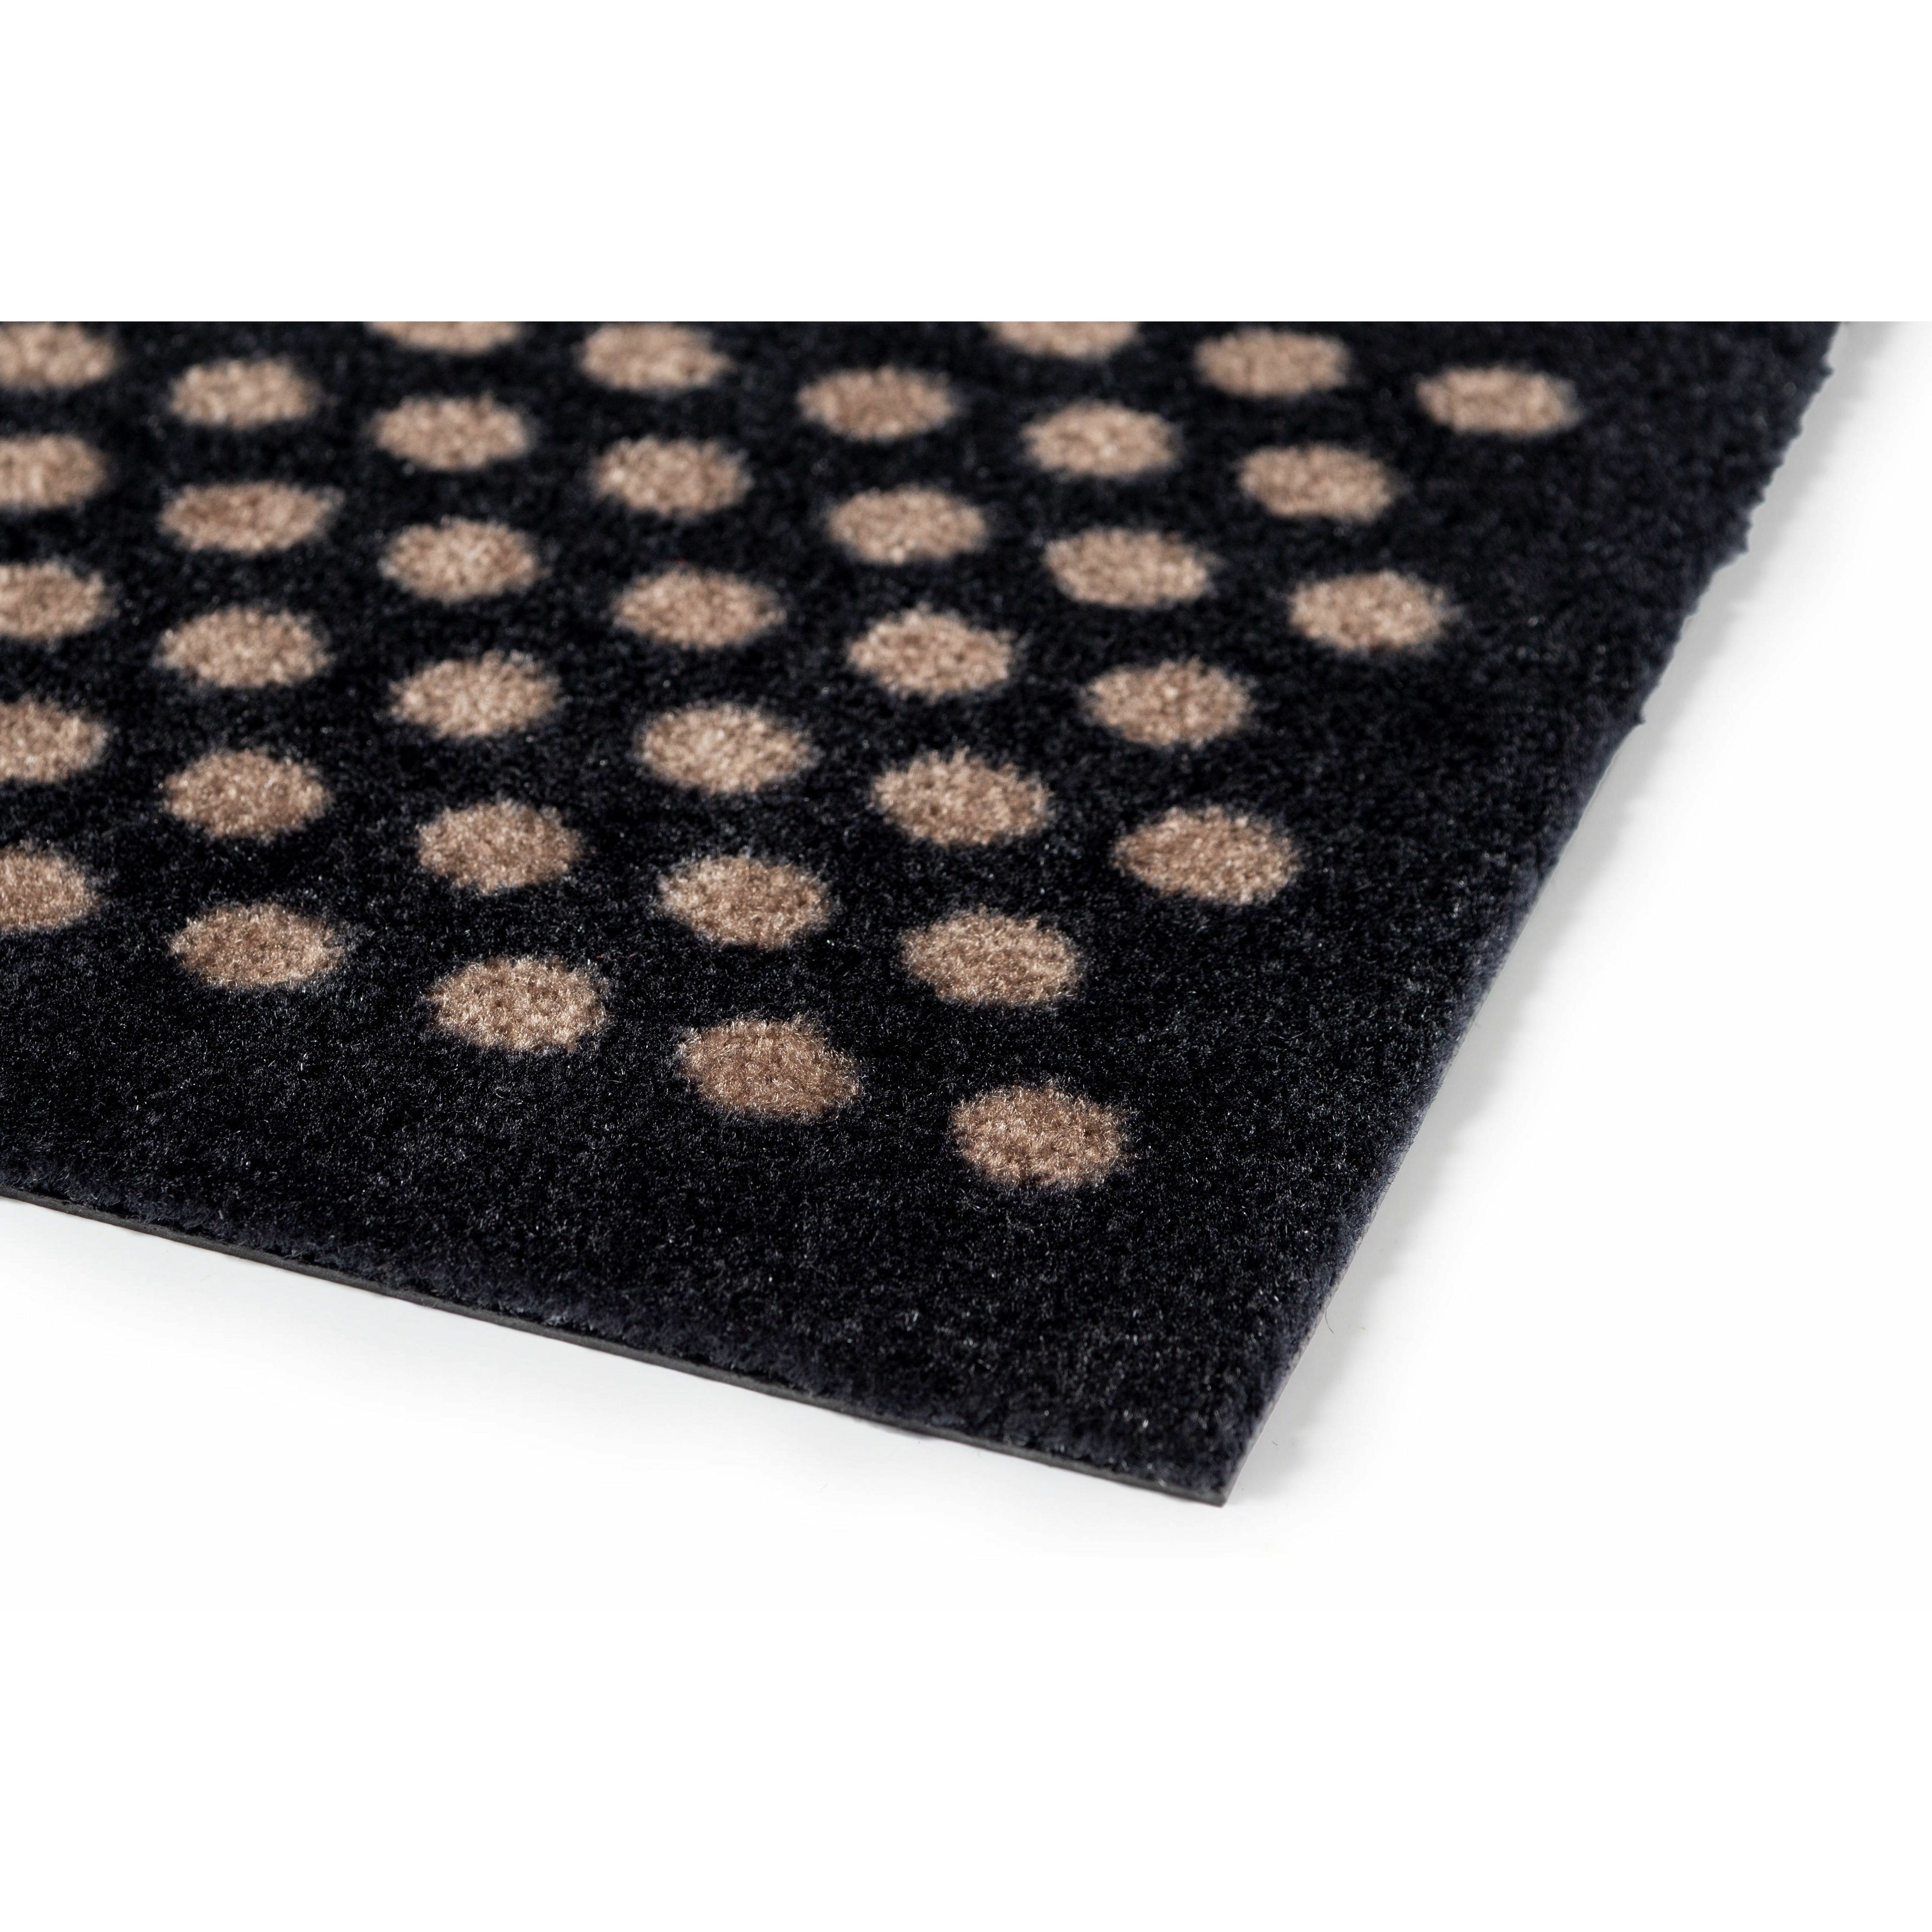 Bodenmatte 67 x 150 cm - Punkte/schwarzer Sand